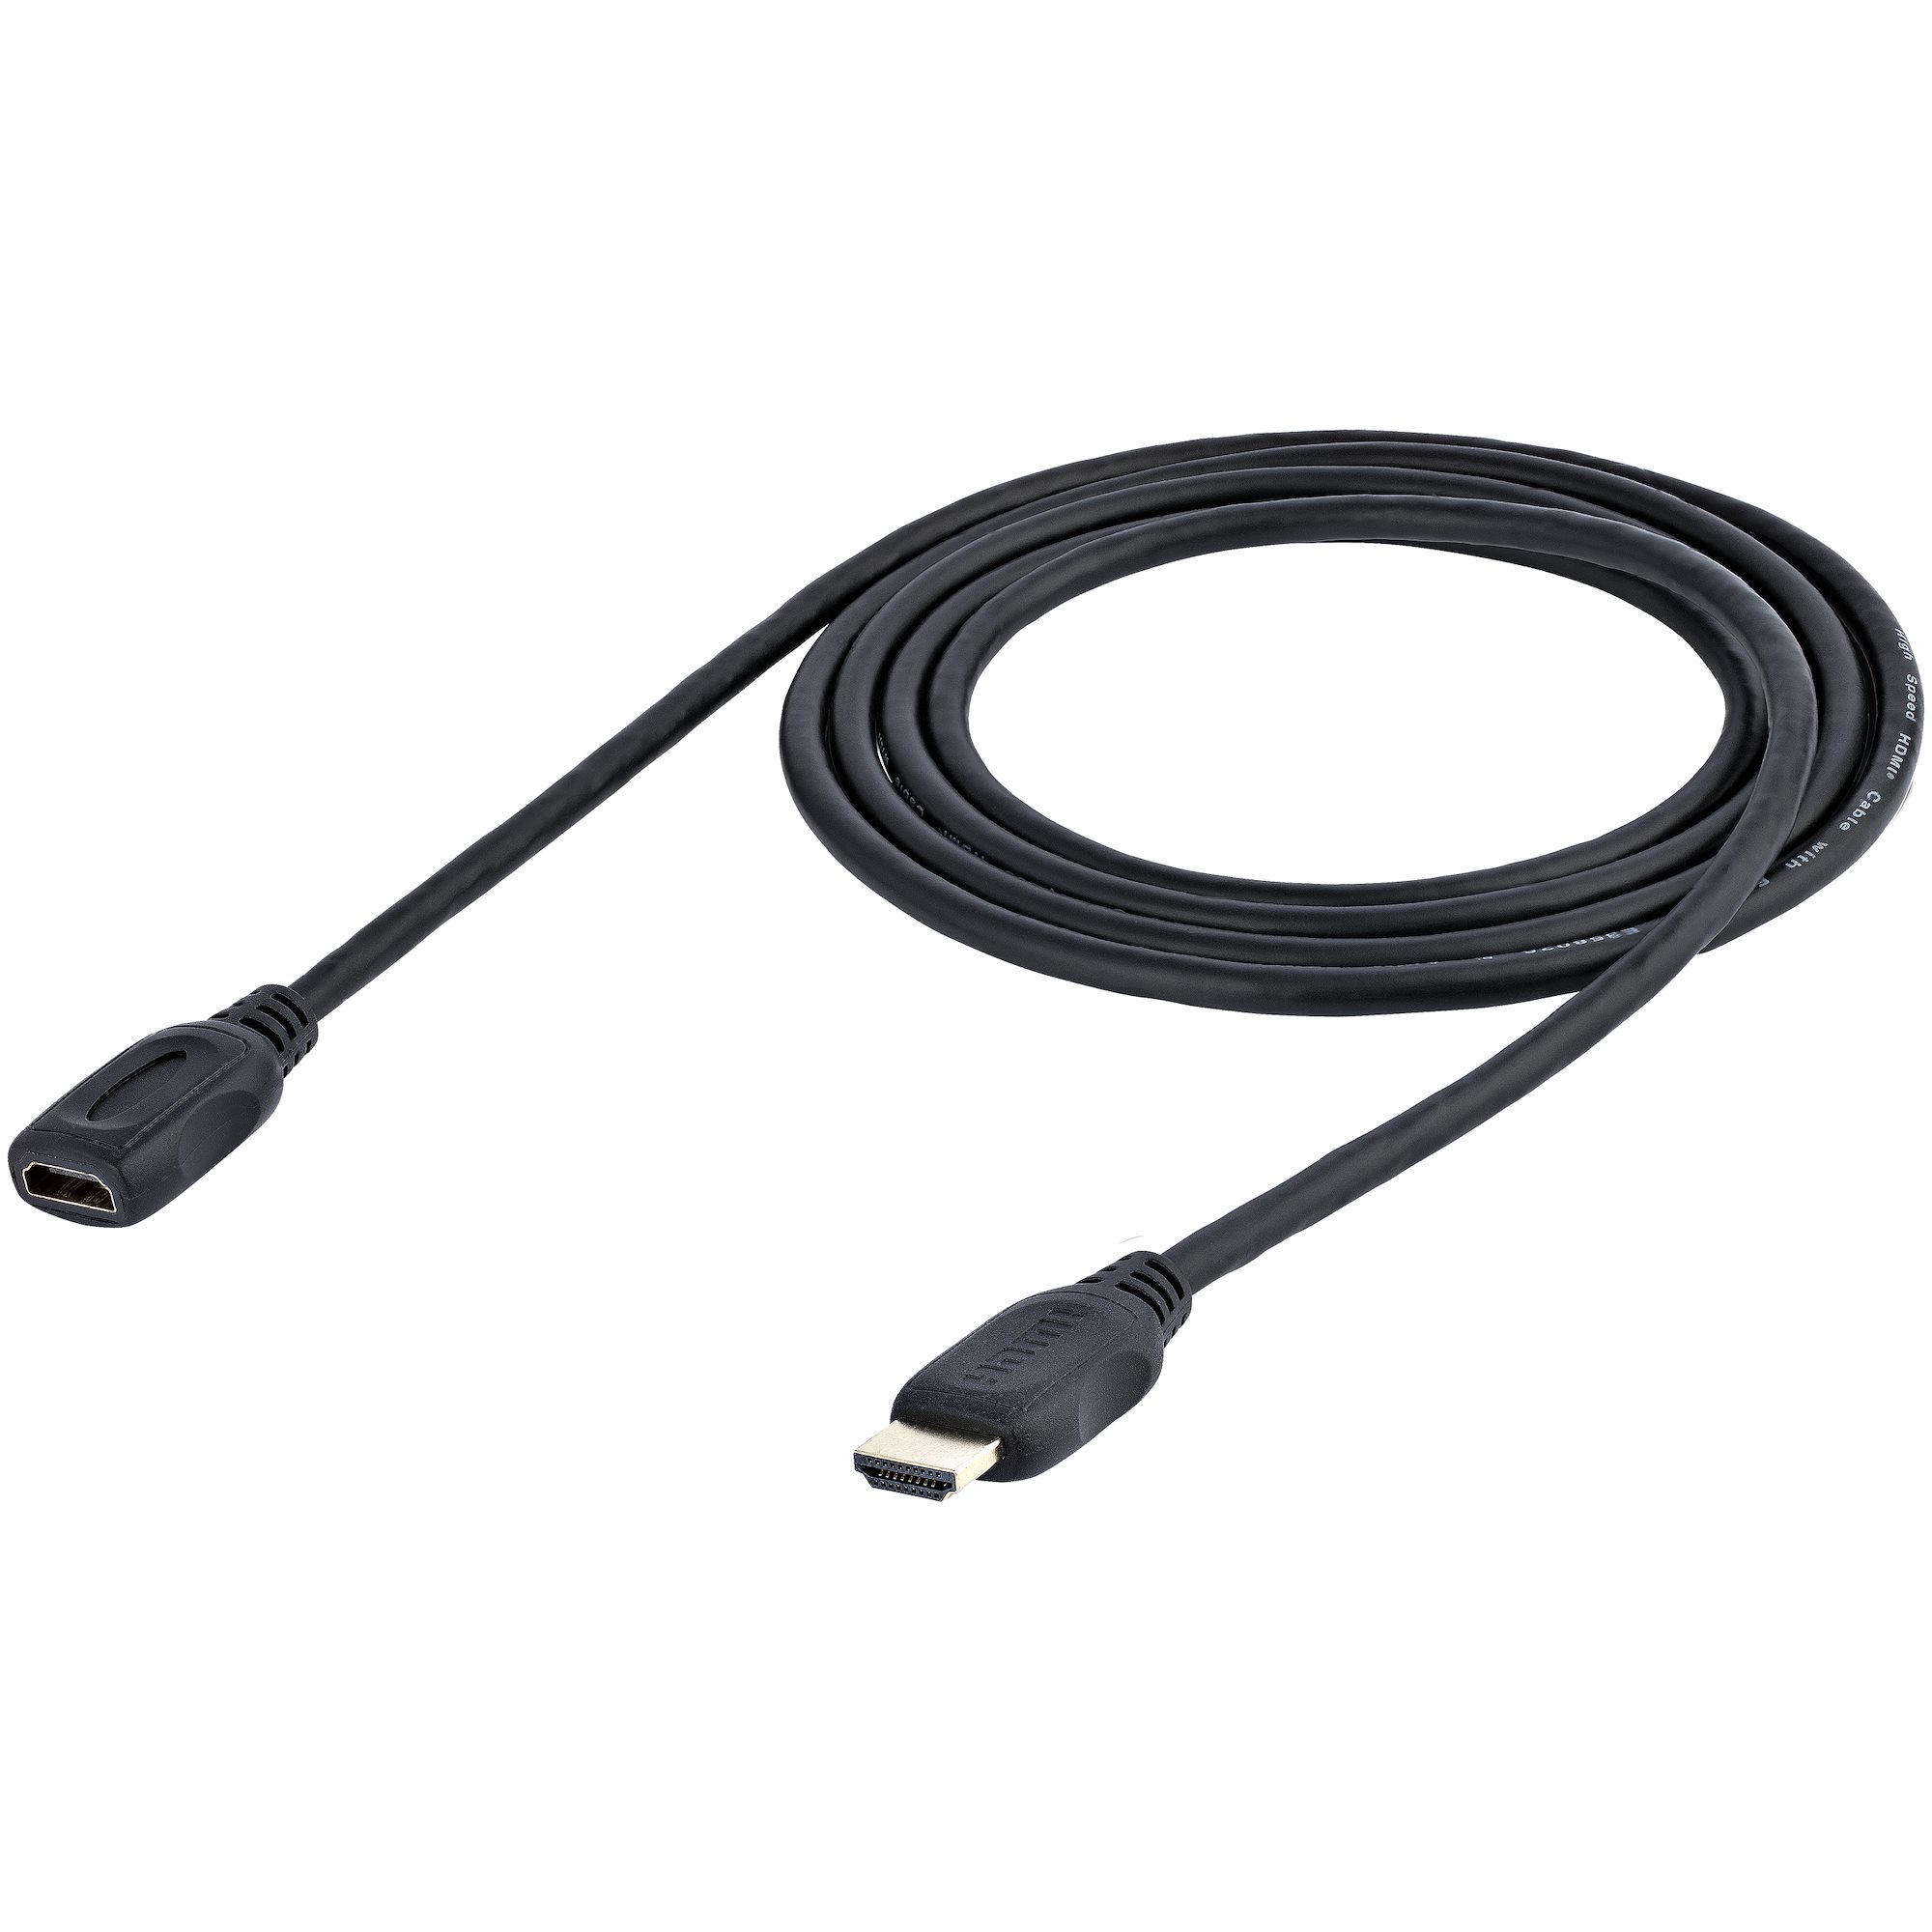 Eg _ 4K HDMI 2.0 Verlängerung Kabel Stecker auf Buchse LCD HDTV 1080P Be 